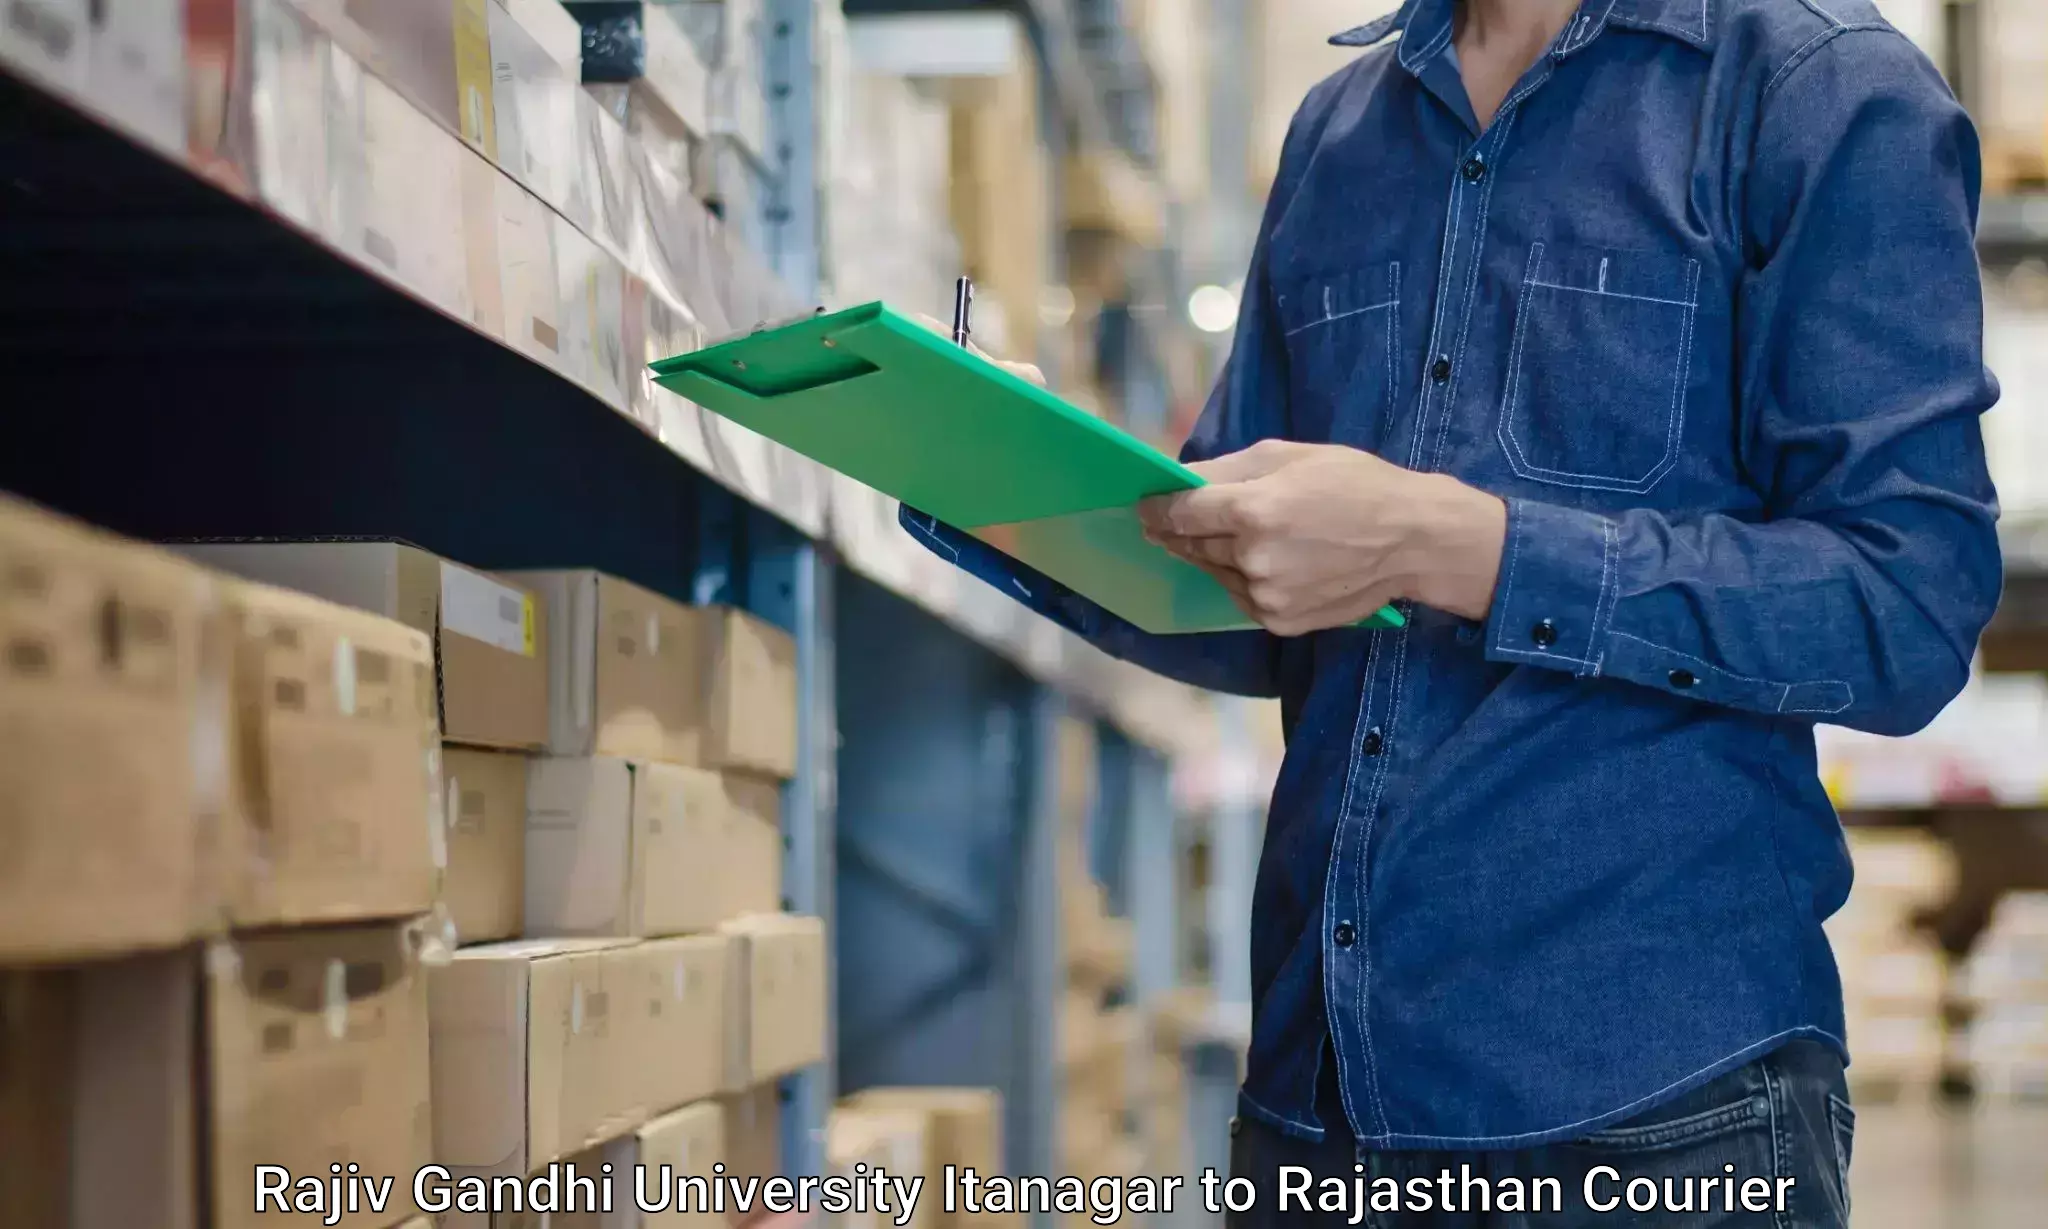 Professional movers and packers Rajiv Gandhi University Itanagar to Udaipurwati